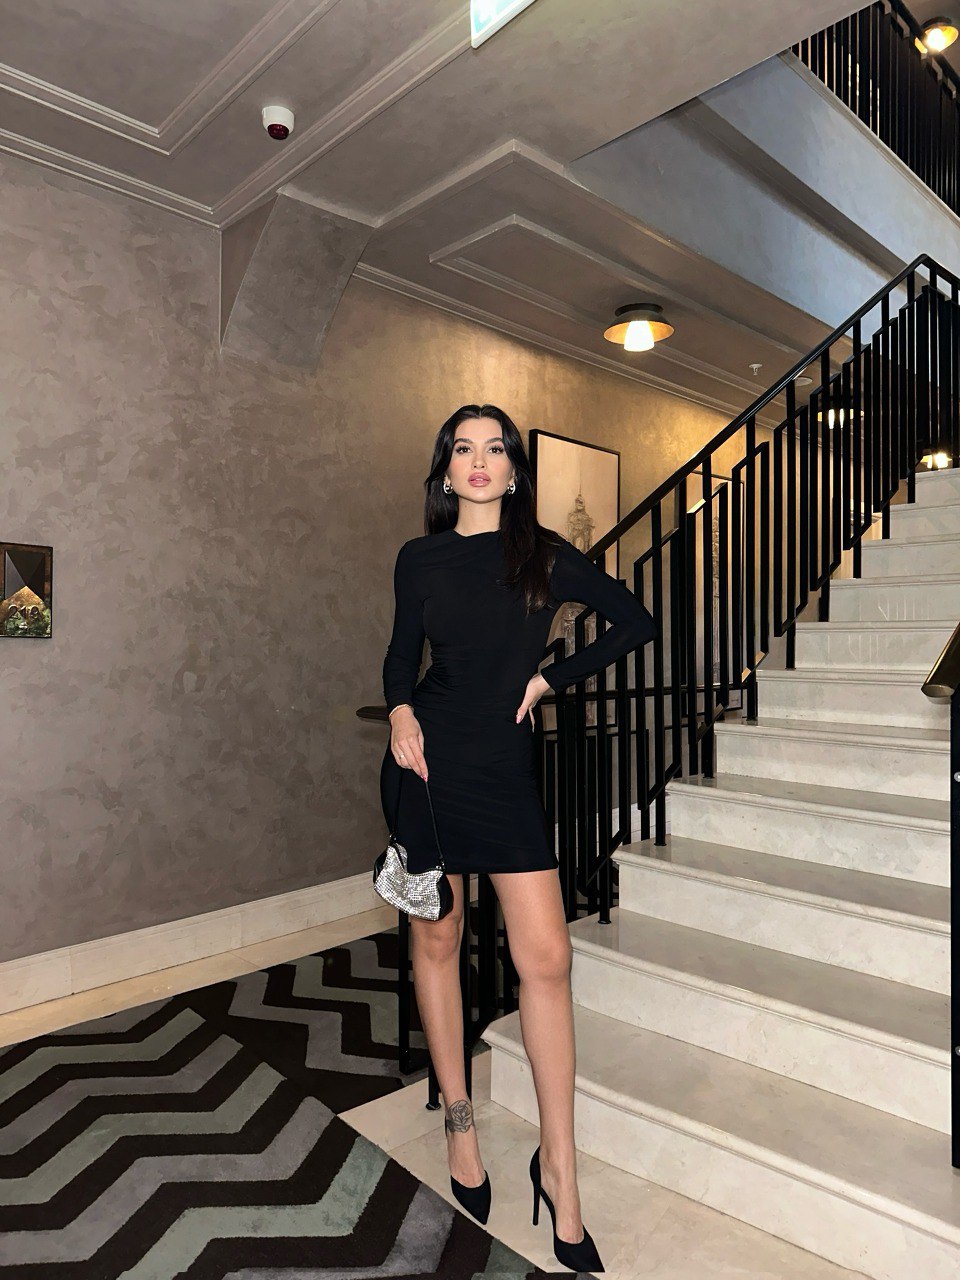 Дамска рокля Liza Blakc  https://bvseductive.com/products/дамска-рокля-liza-blakc  дамска рокля в черен цвят изработена от приятна и мека материя вталена кройка, подчертаваща извивките перфектен избор за Вашата стилна визия